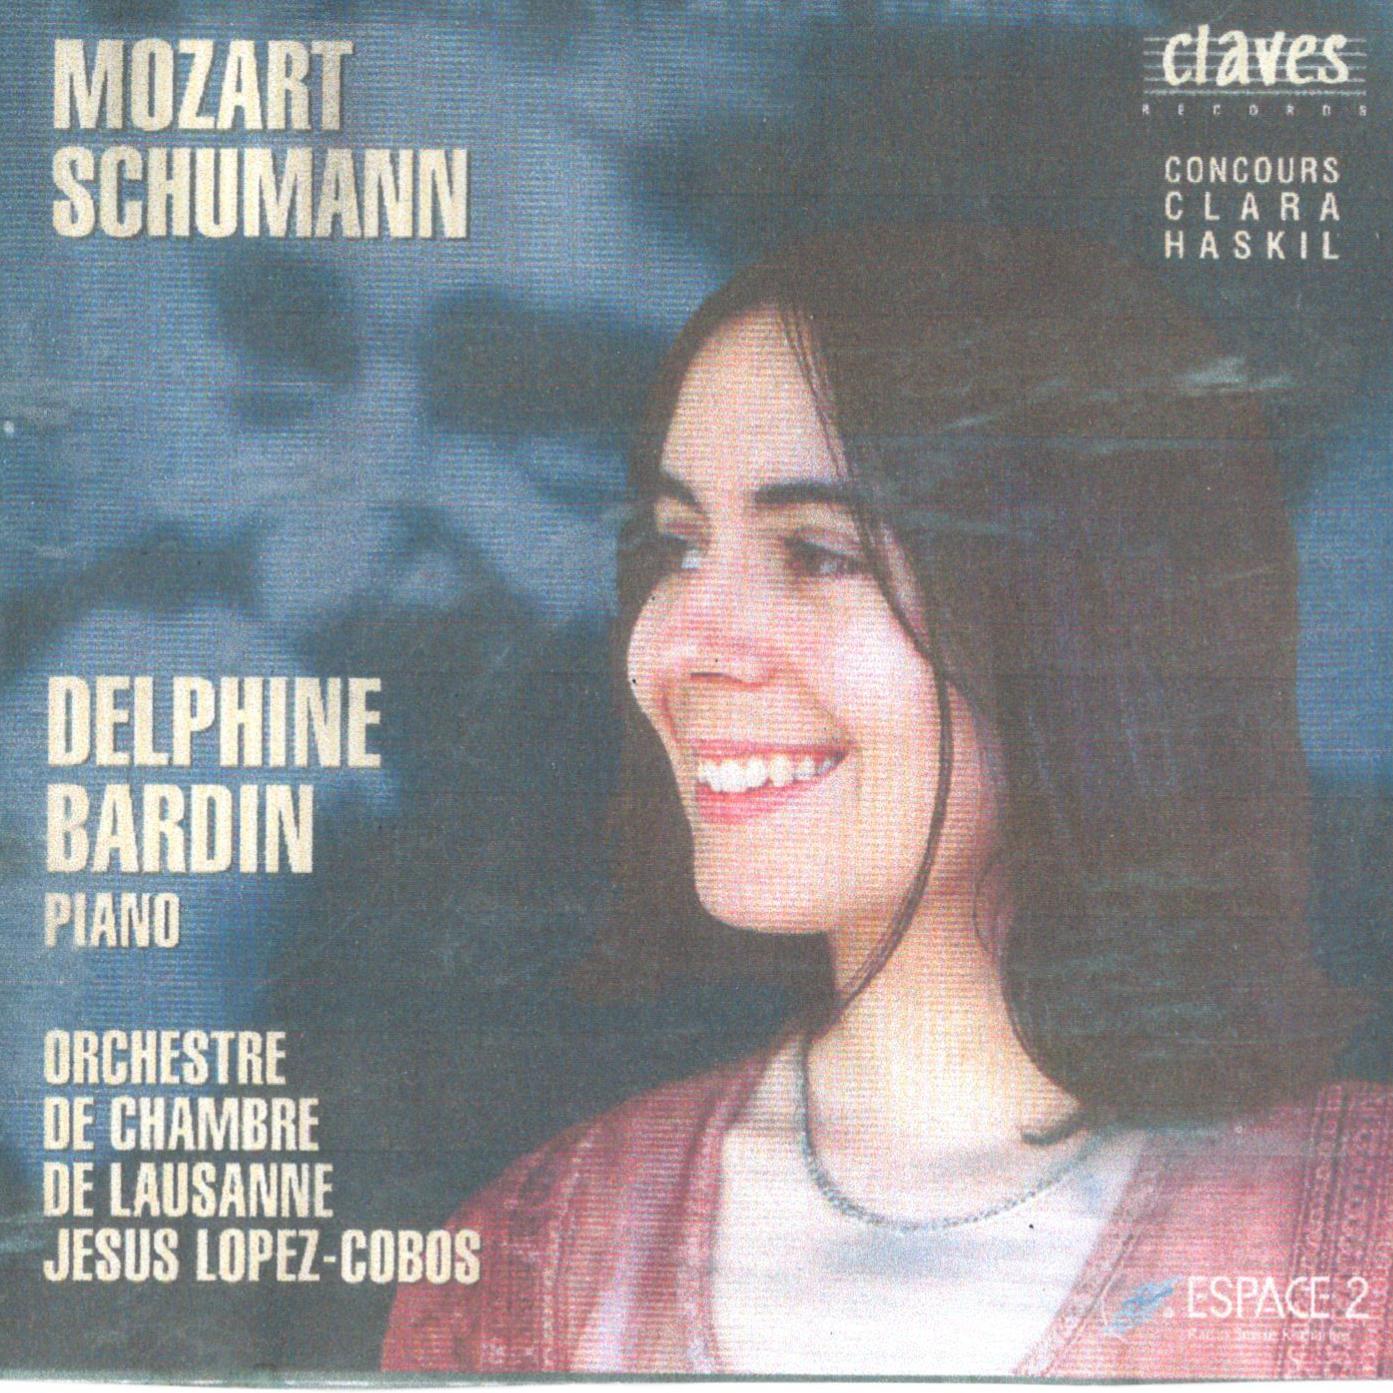 Delphine Bardin - Forest scenes and piano concerto No.17 in g major